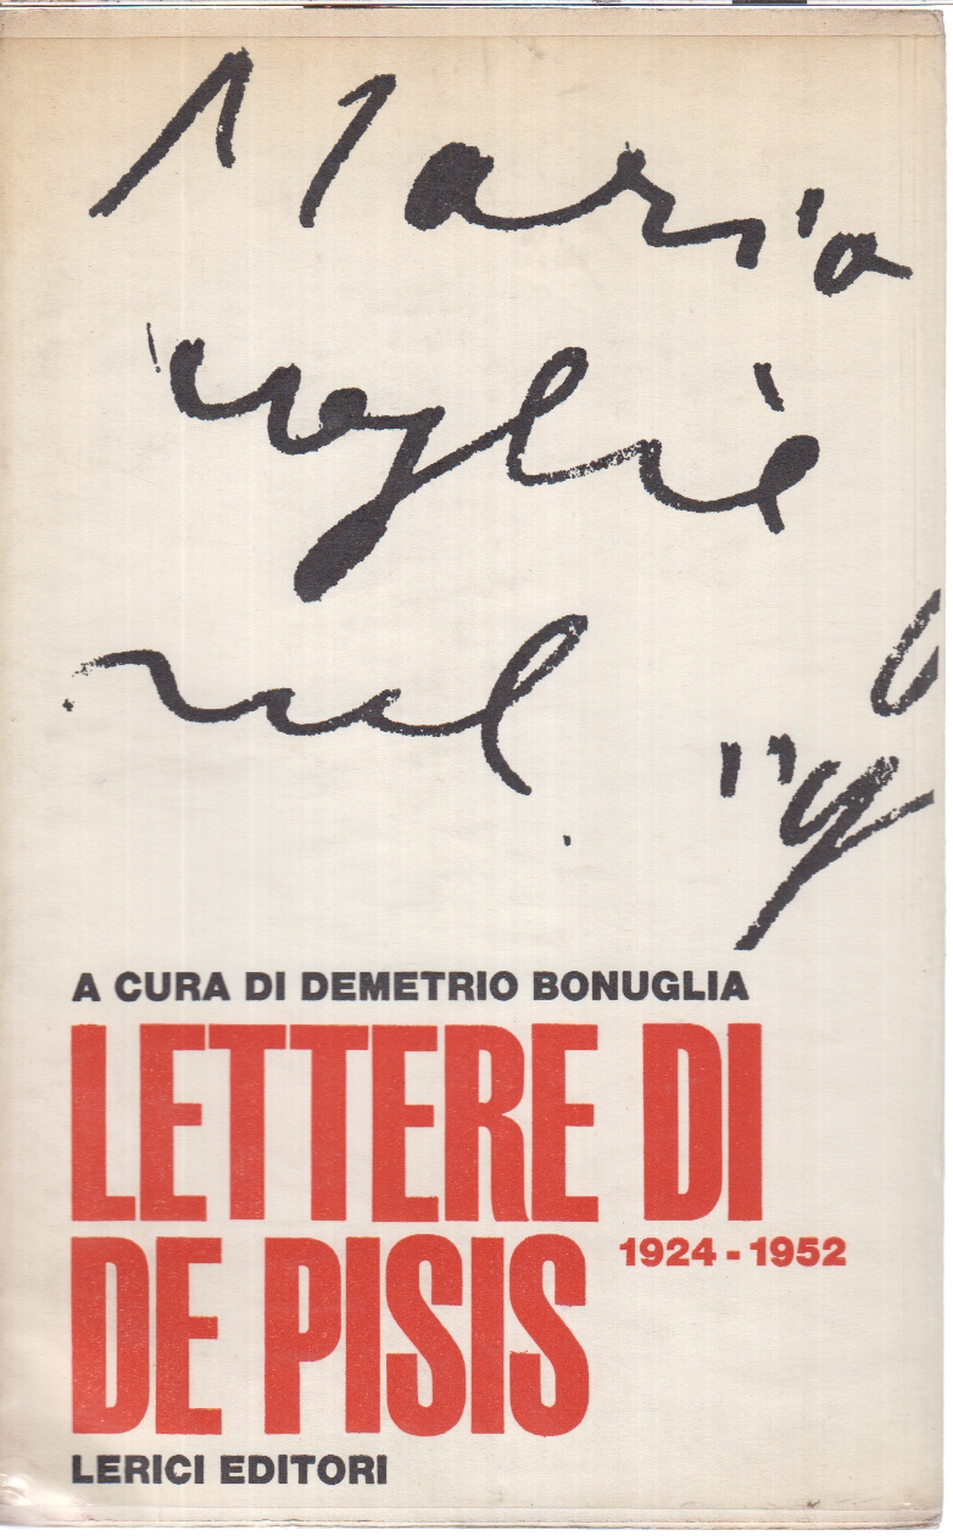 Letters of De Pisis 1924-1952